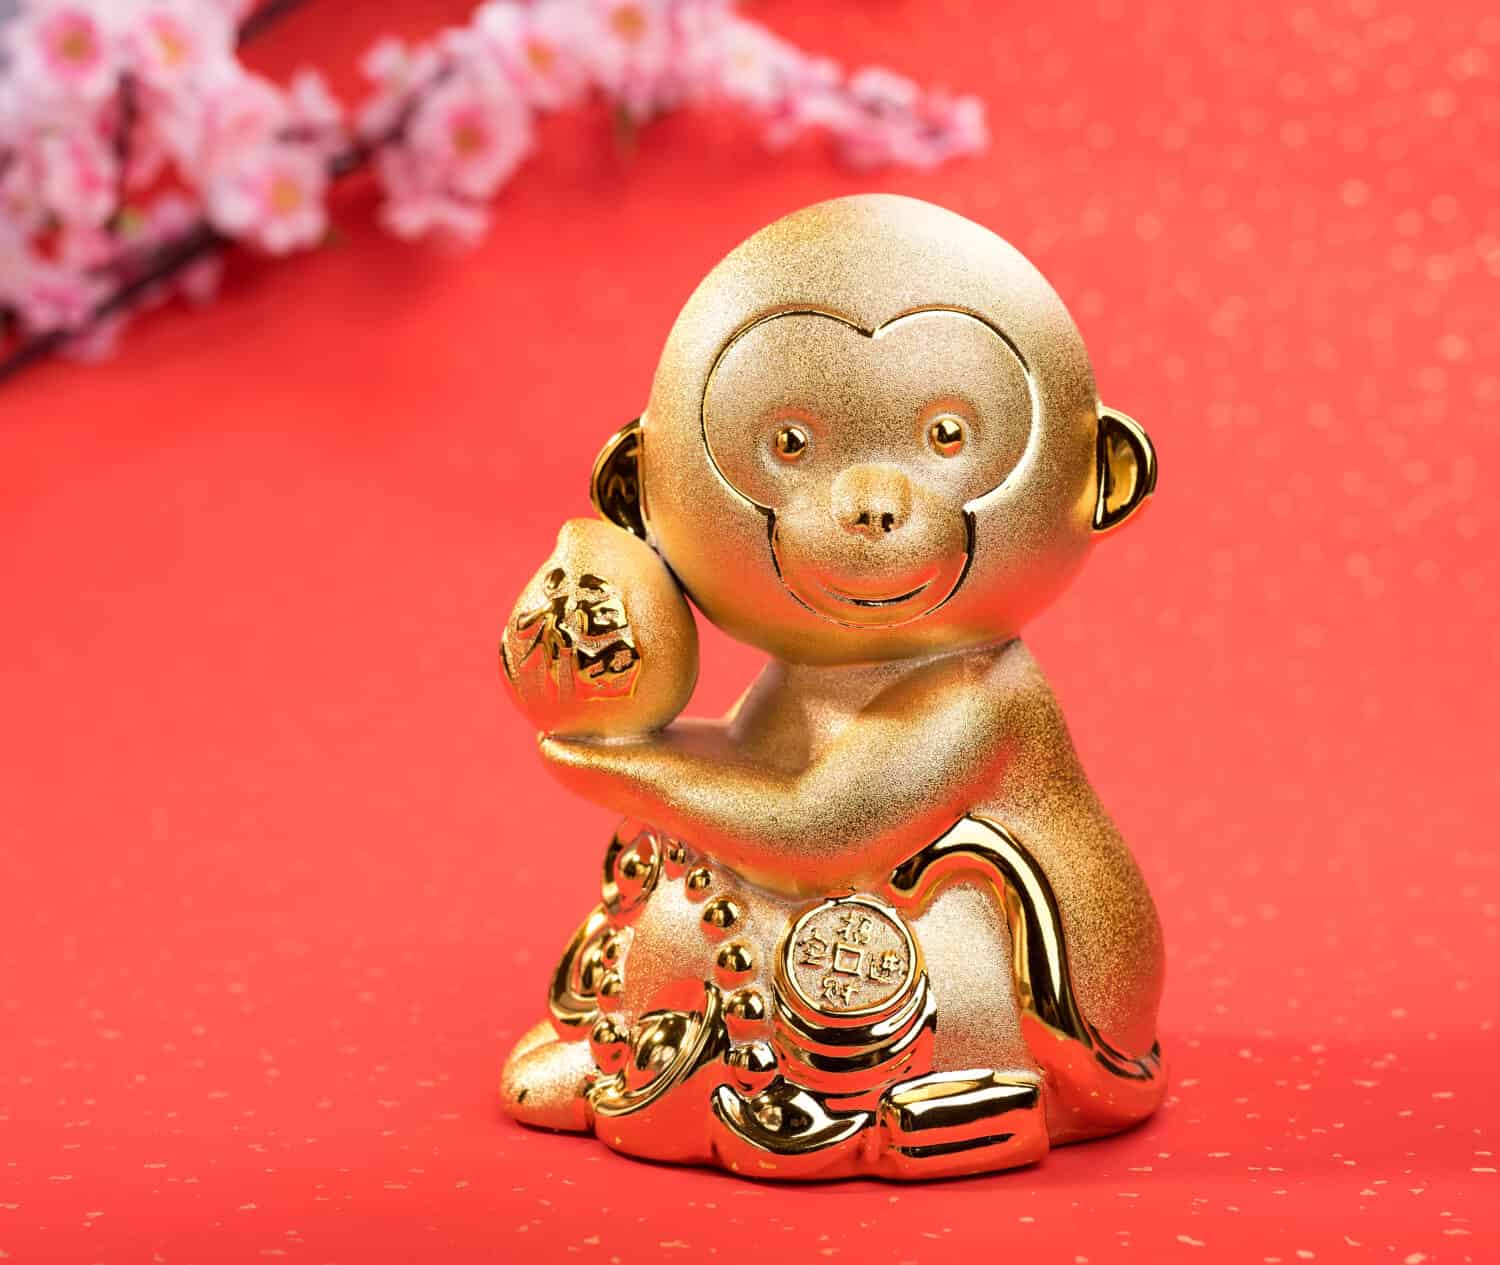 monkey 2023 chinese horoscope